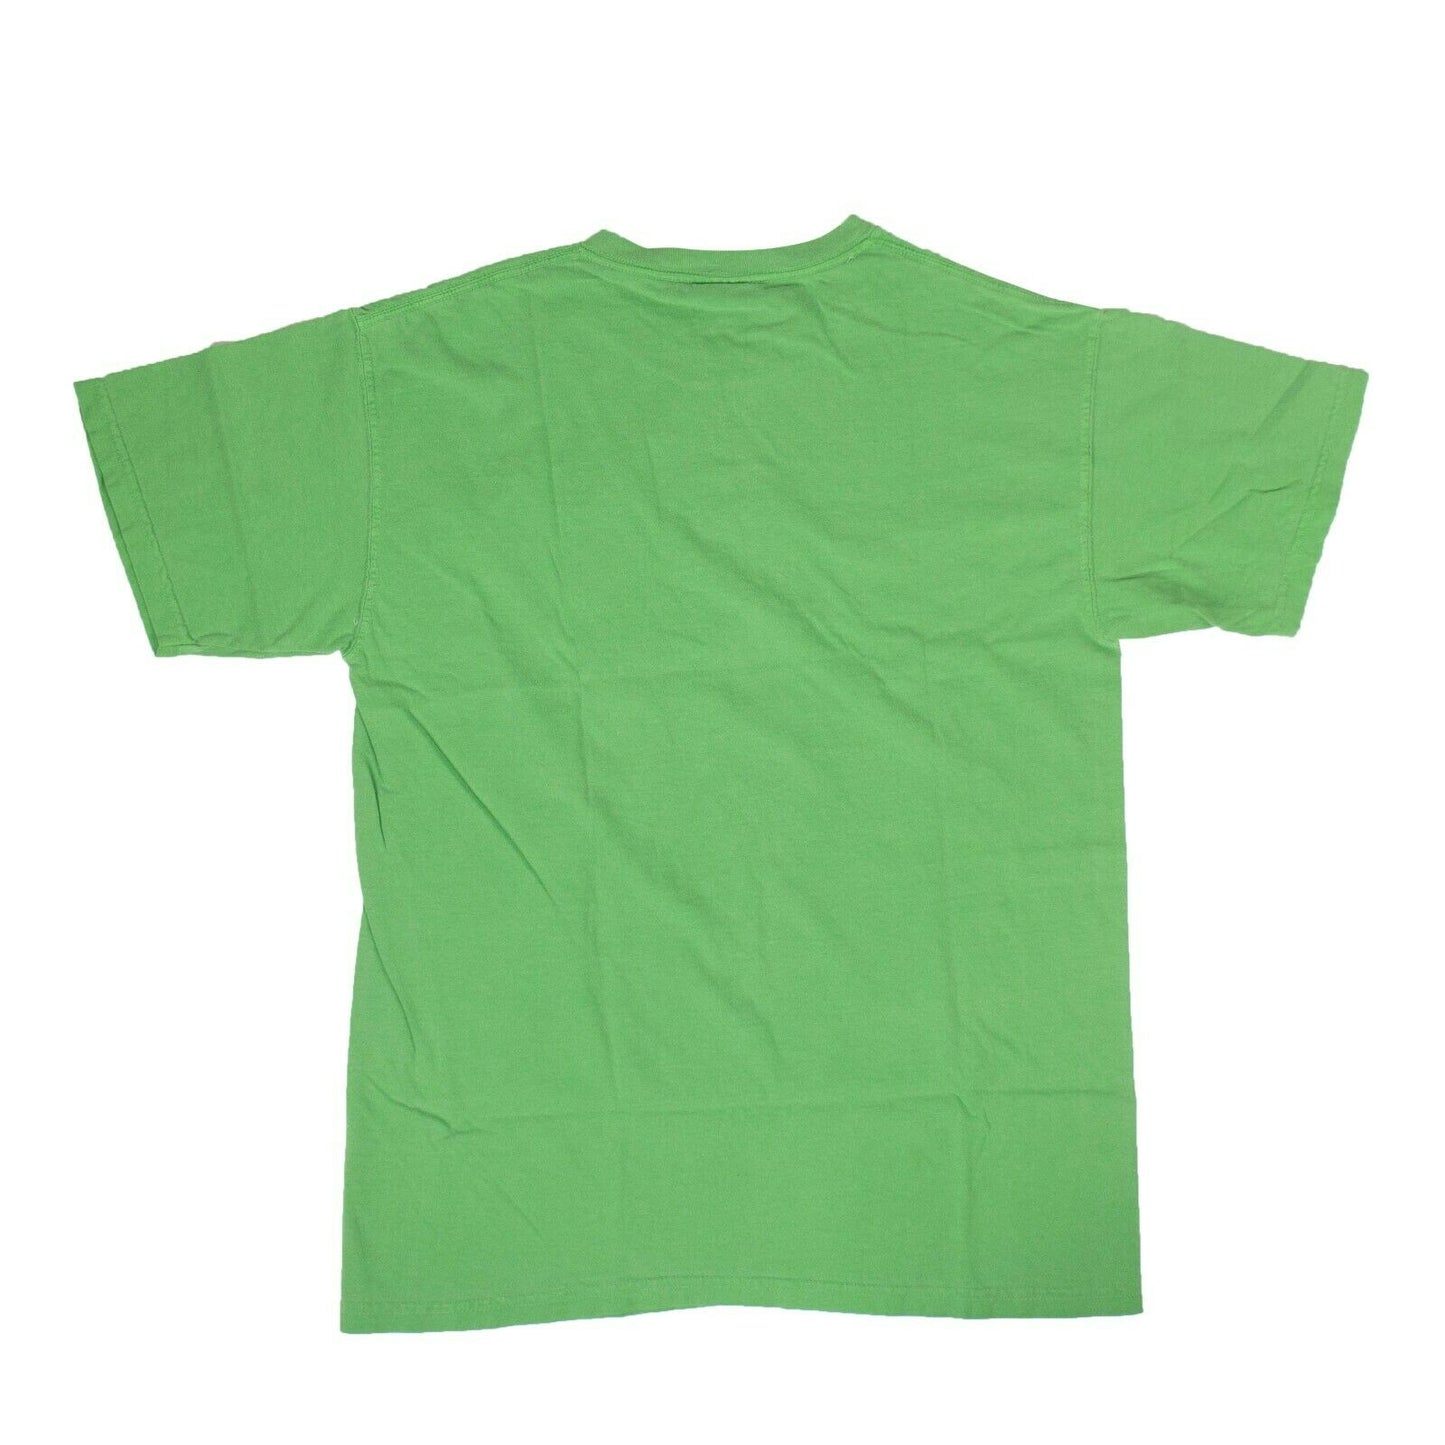 Halfway Dead "Lightning Skull" Logo Short Sleeves T-Shirt - Green